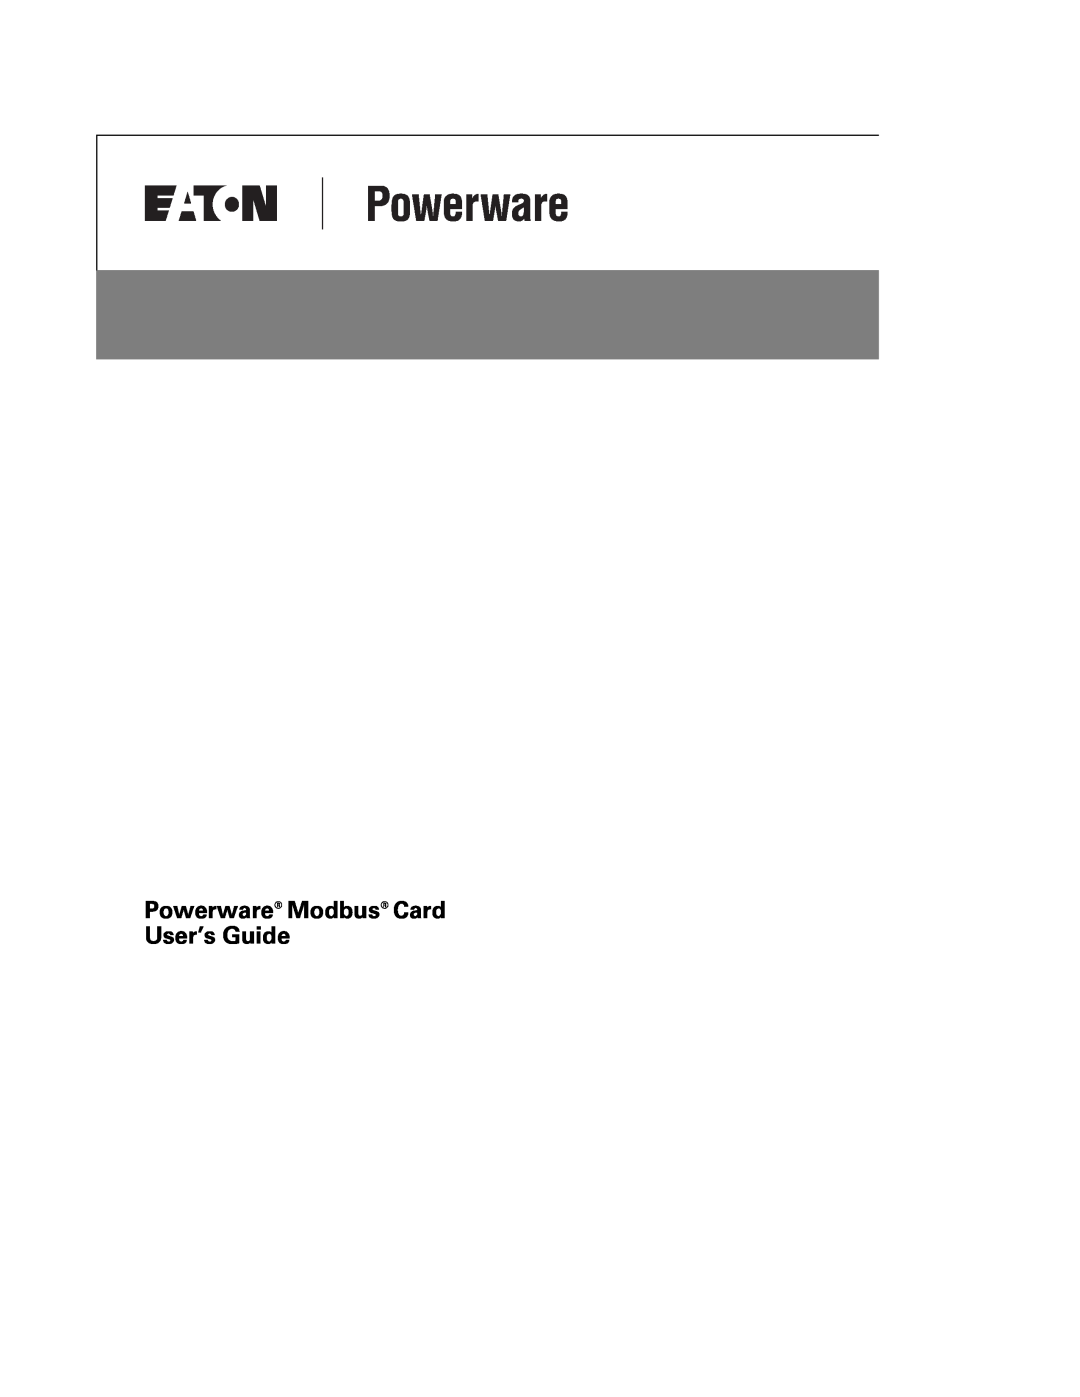 Powerware FCC 15 manual Powerware Modbus Card User’s Guide 